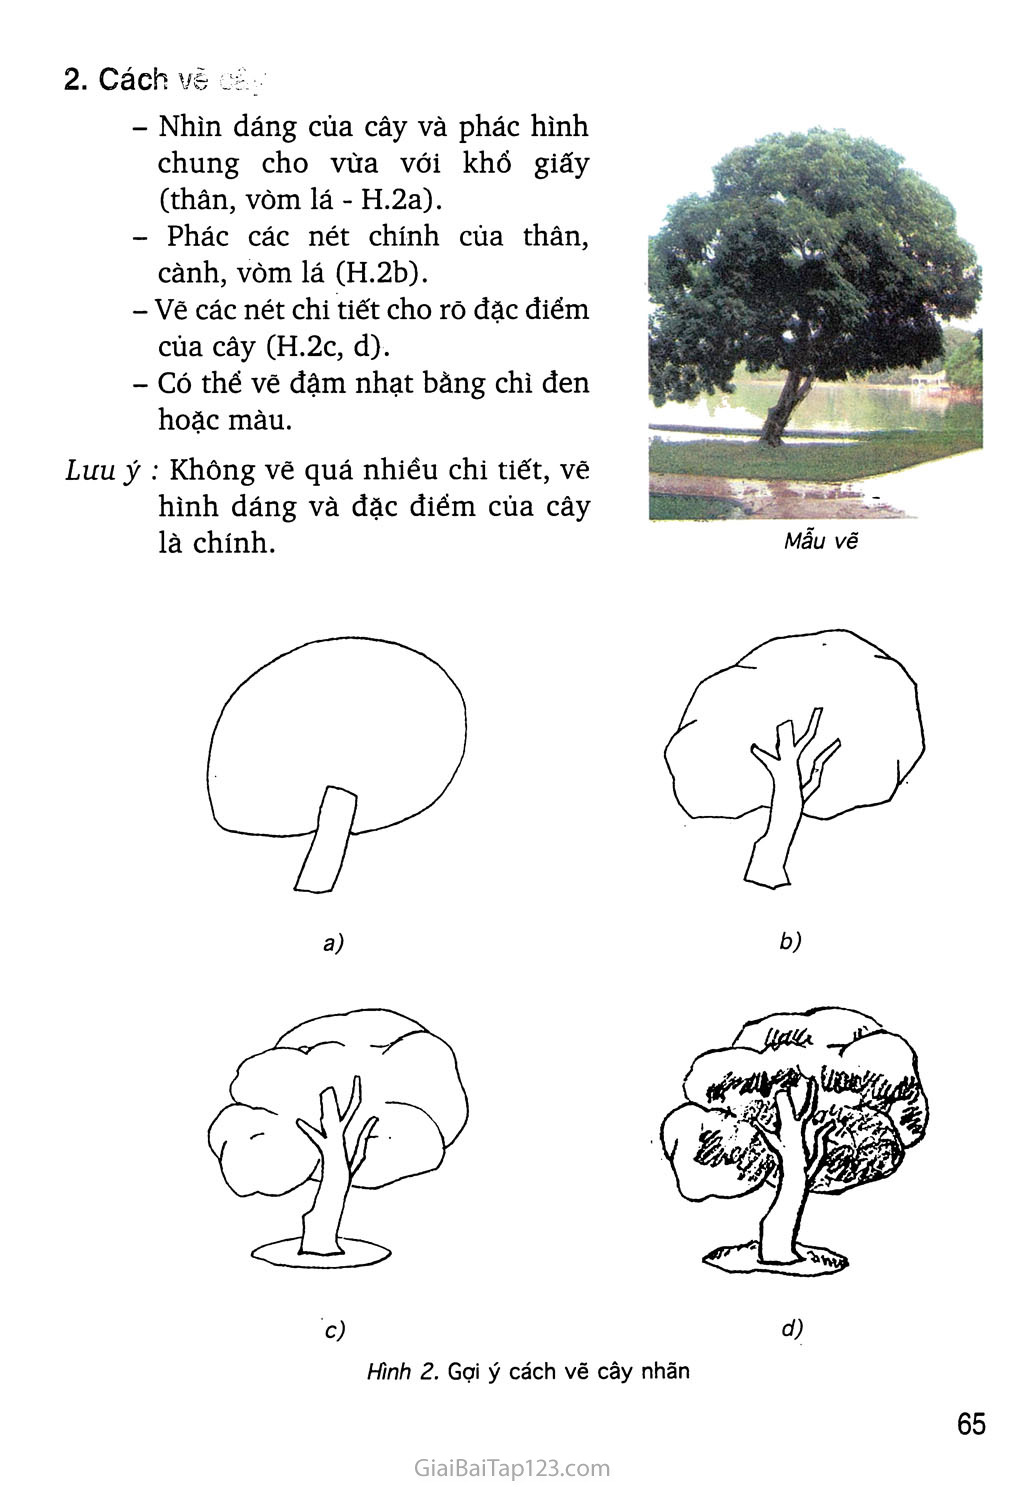 Cách vẽ cây xanh  How to draw a tree  YouTube